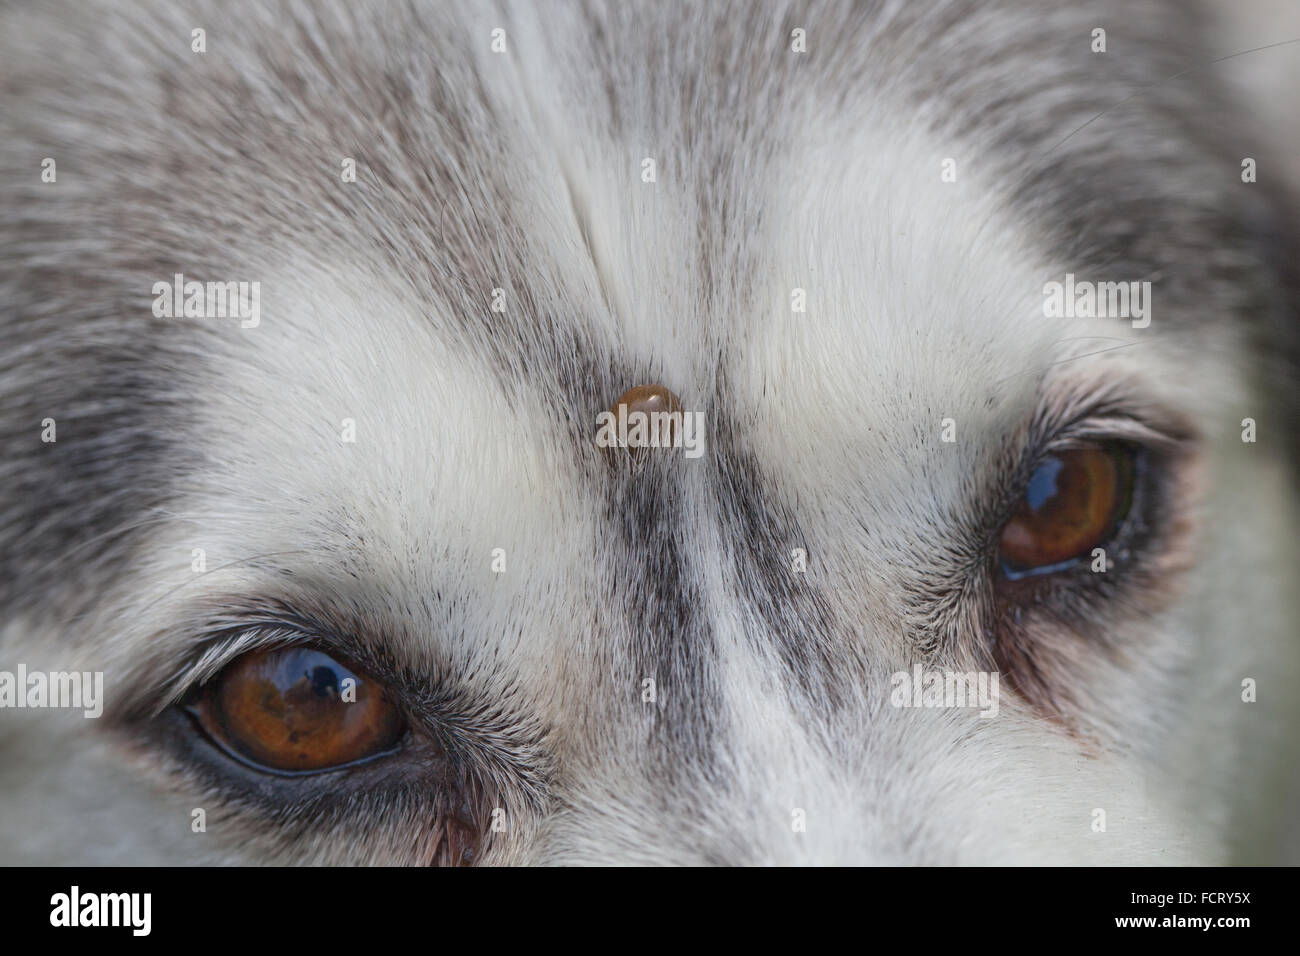 Siberian Husky. Hund. Canis Lupus Familiaris. Stirn. Beachten Sie, dass die Zecke Ixodes Ricinus, auf der Stirn zwischen den Augen eingebettet. Stockfoto